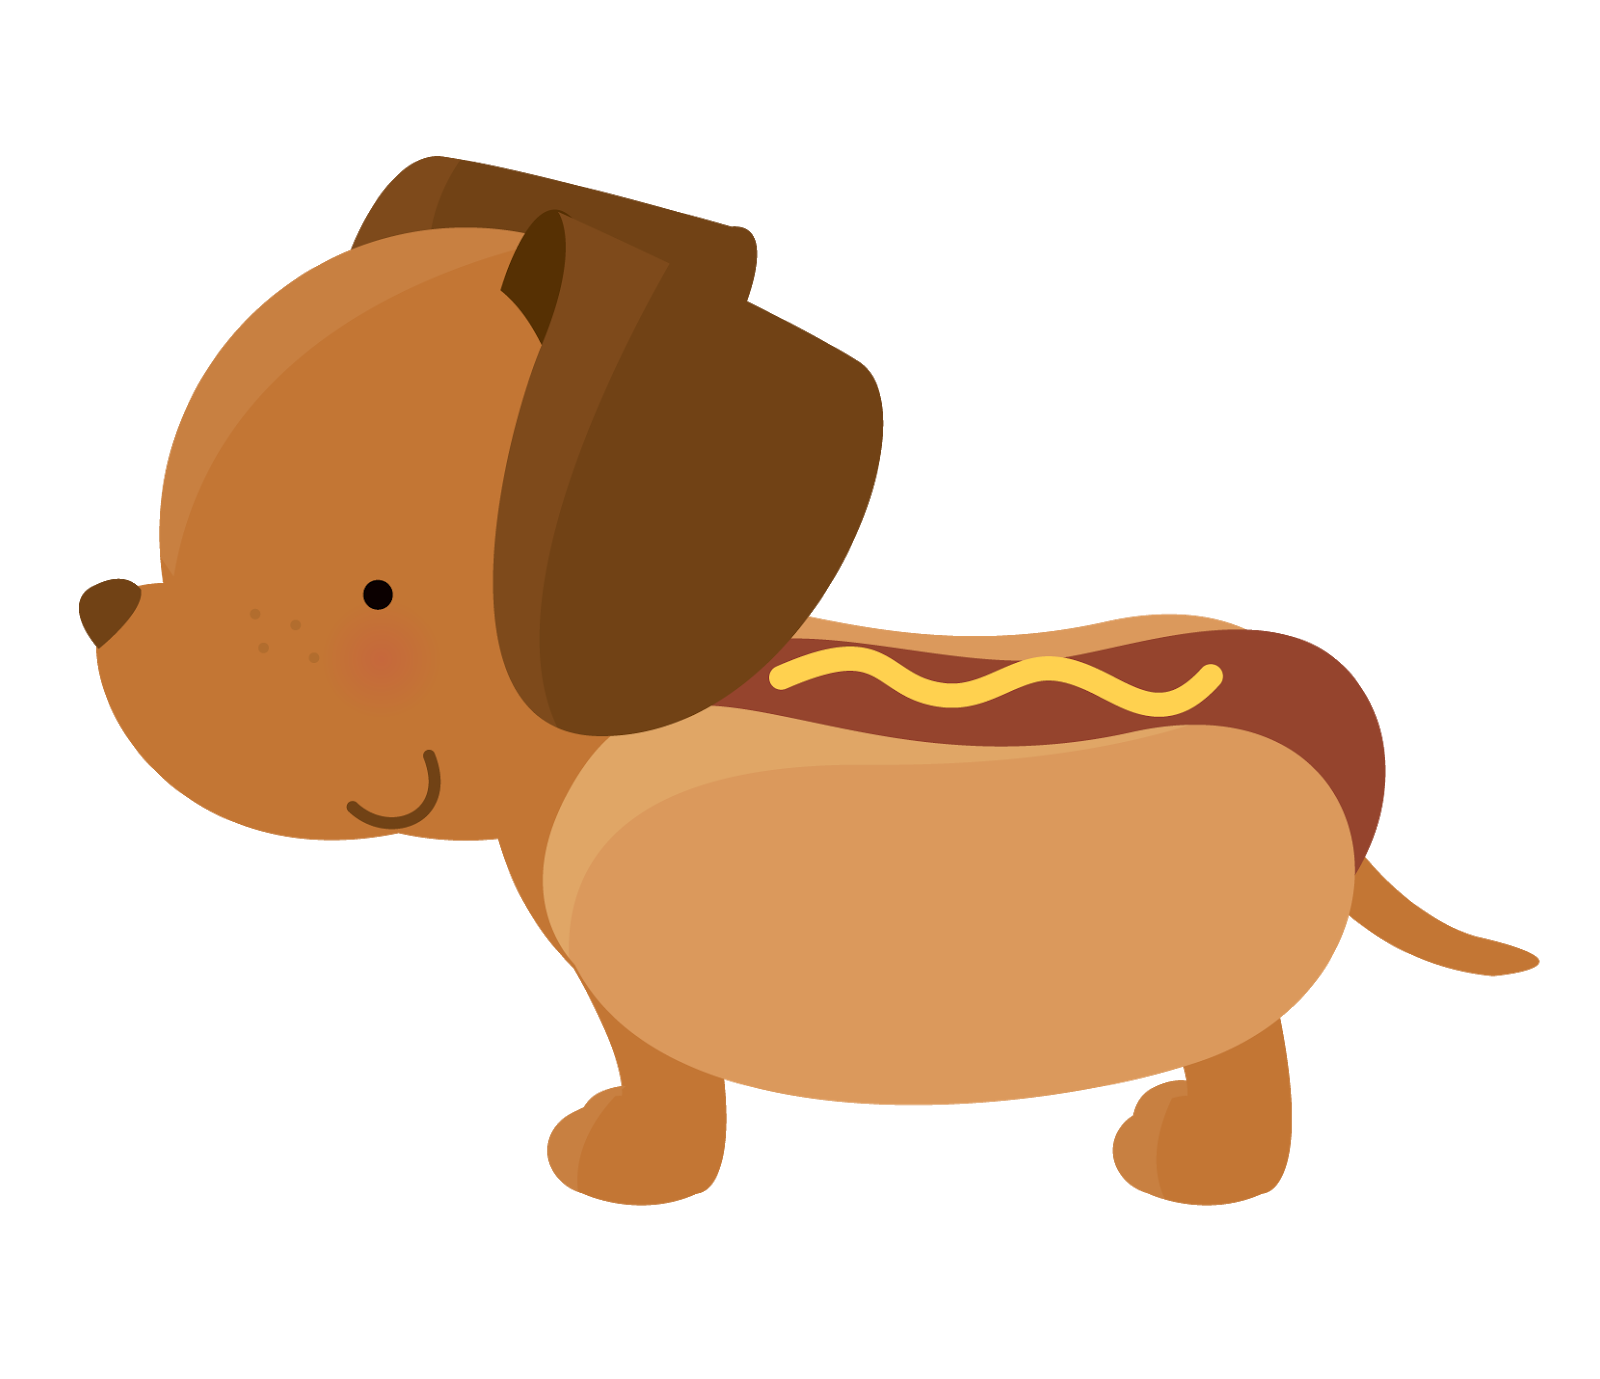 Hotdog clipart weiner, Hotdog weiner Transparent FREE for download on